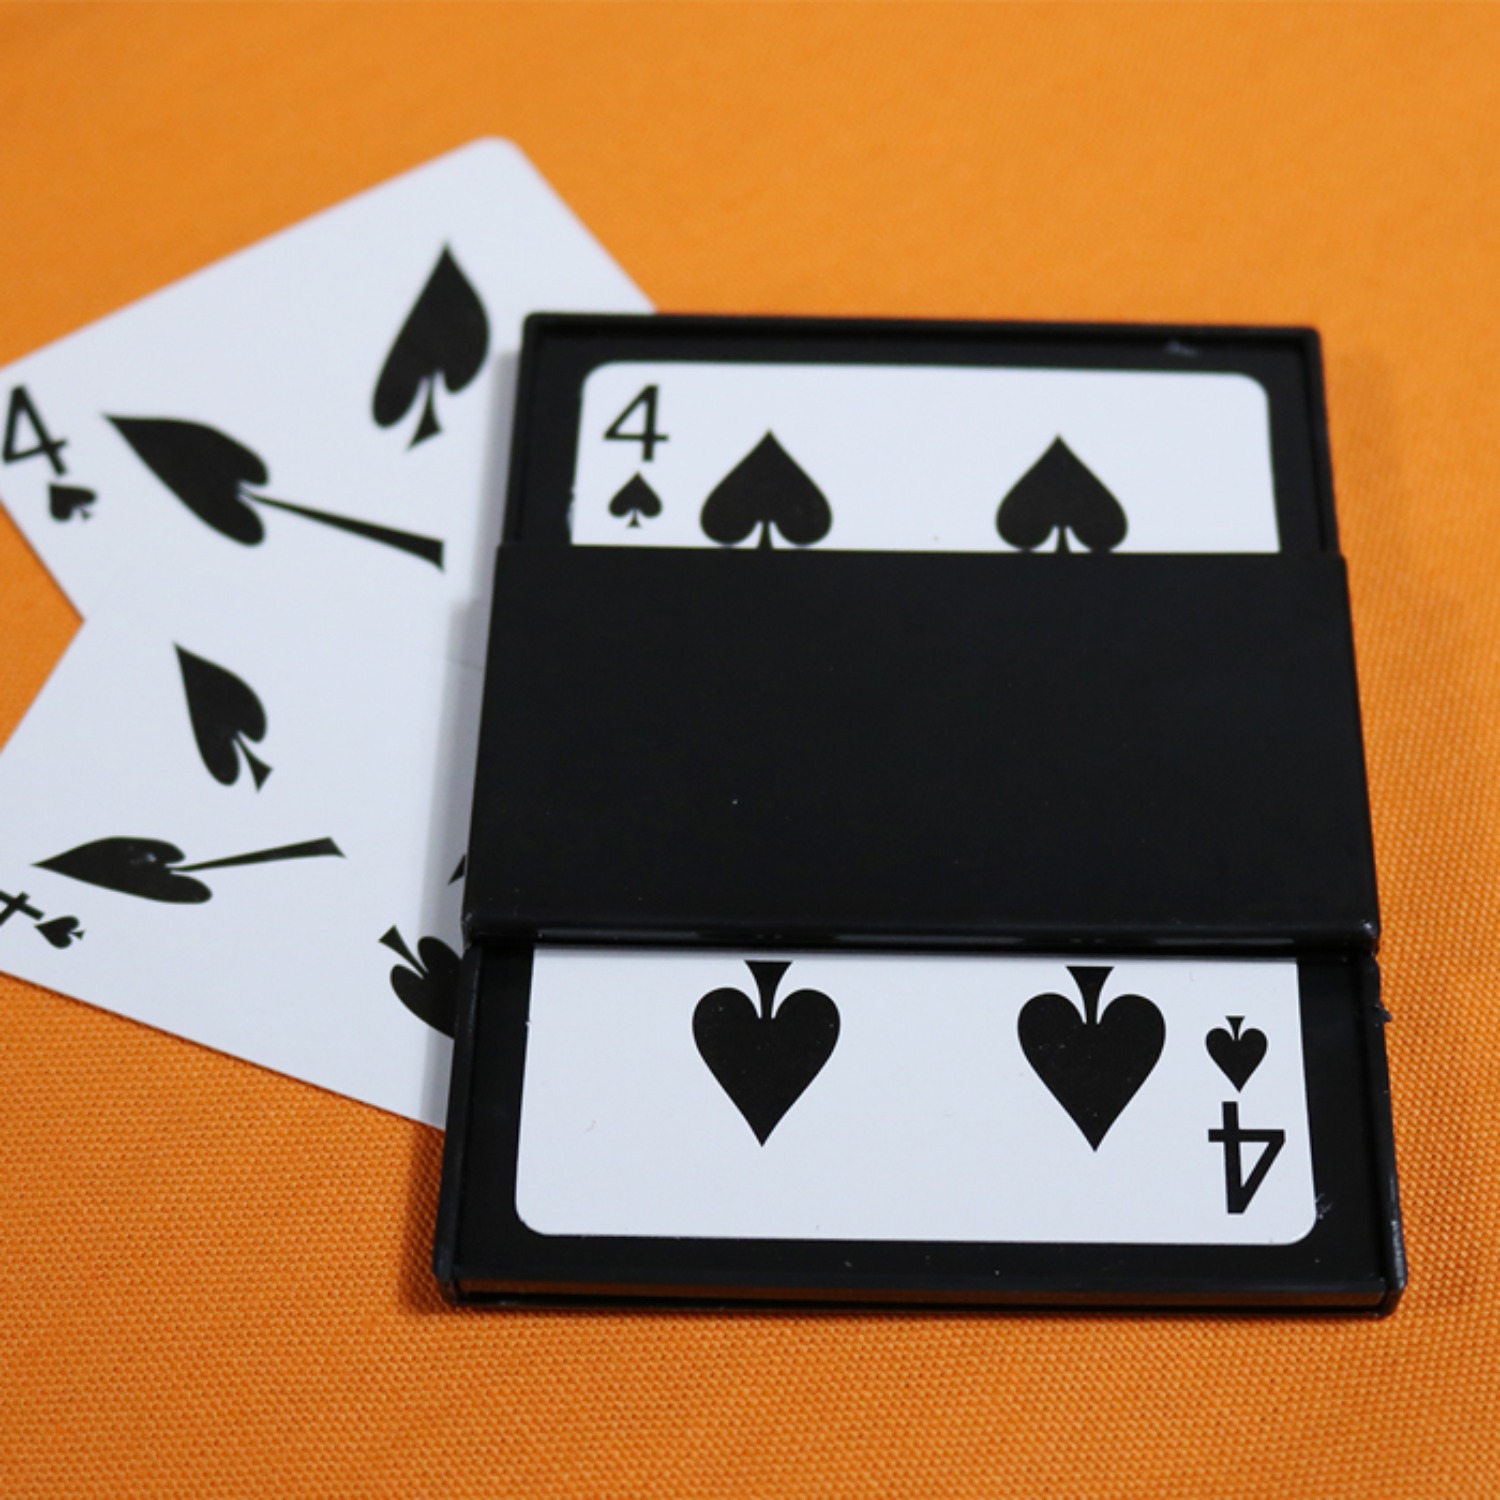 [카드체인저 Card changer] 카드가 순식간에 바뀌는 두개의 카드마술을 연출하실 수 있습니다.